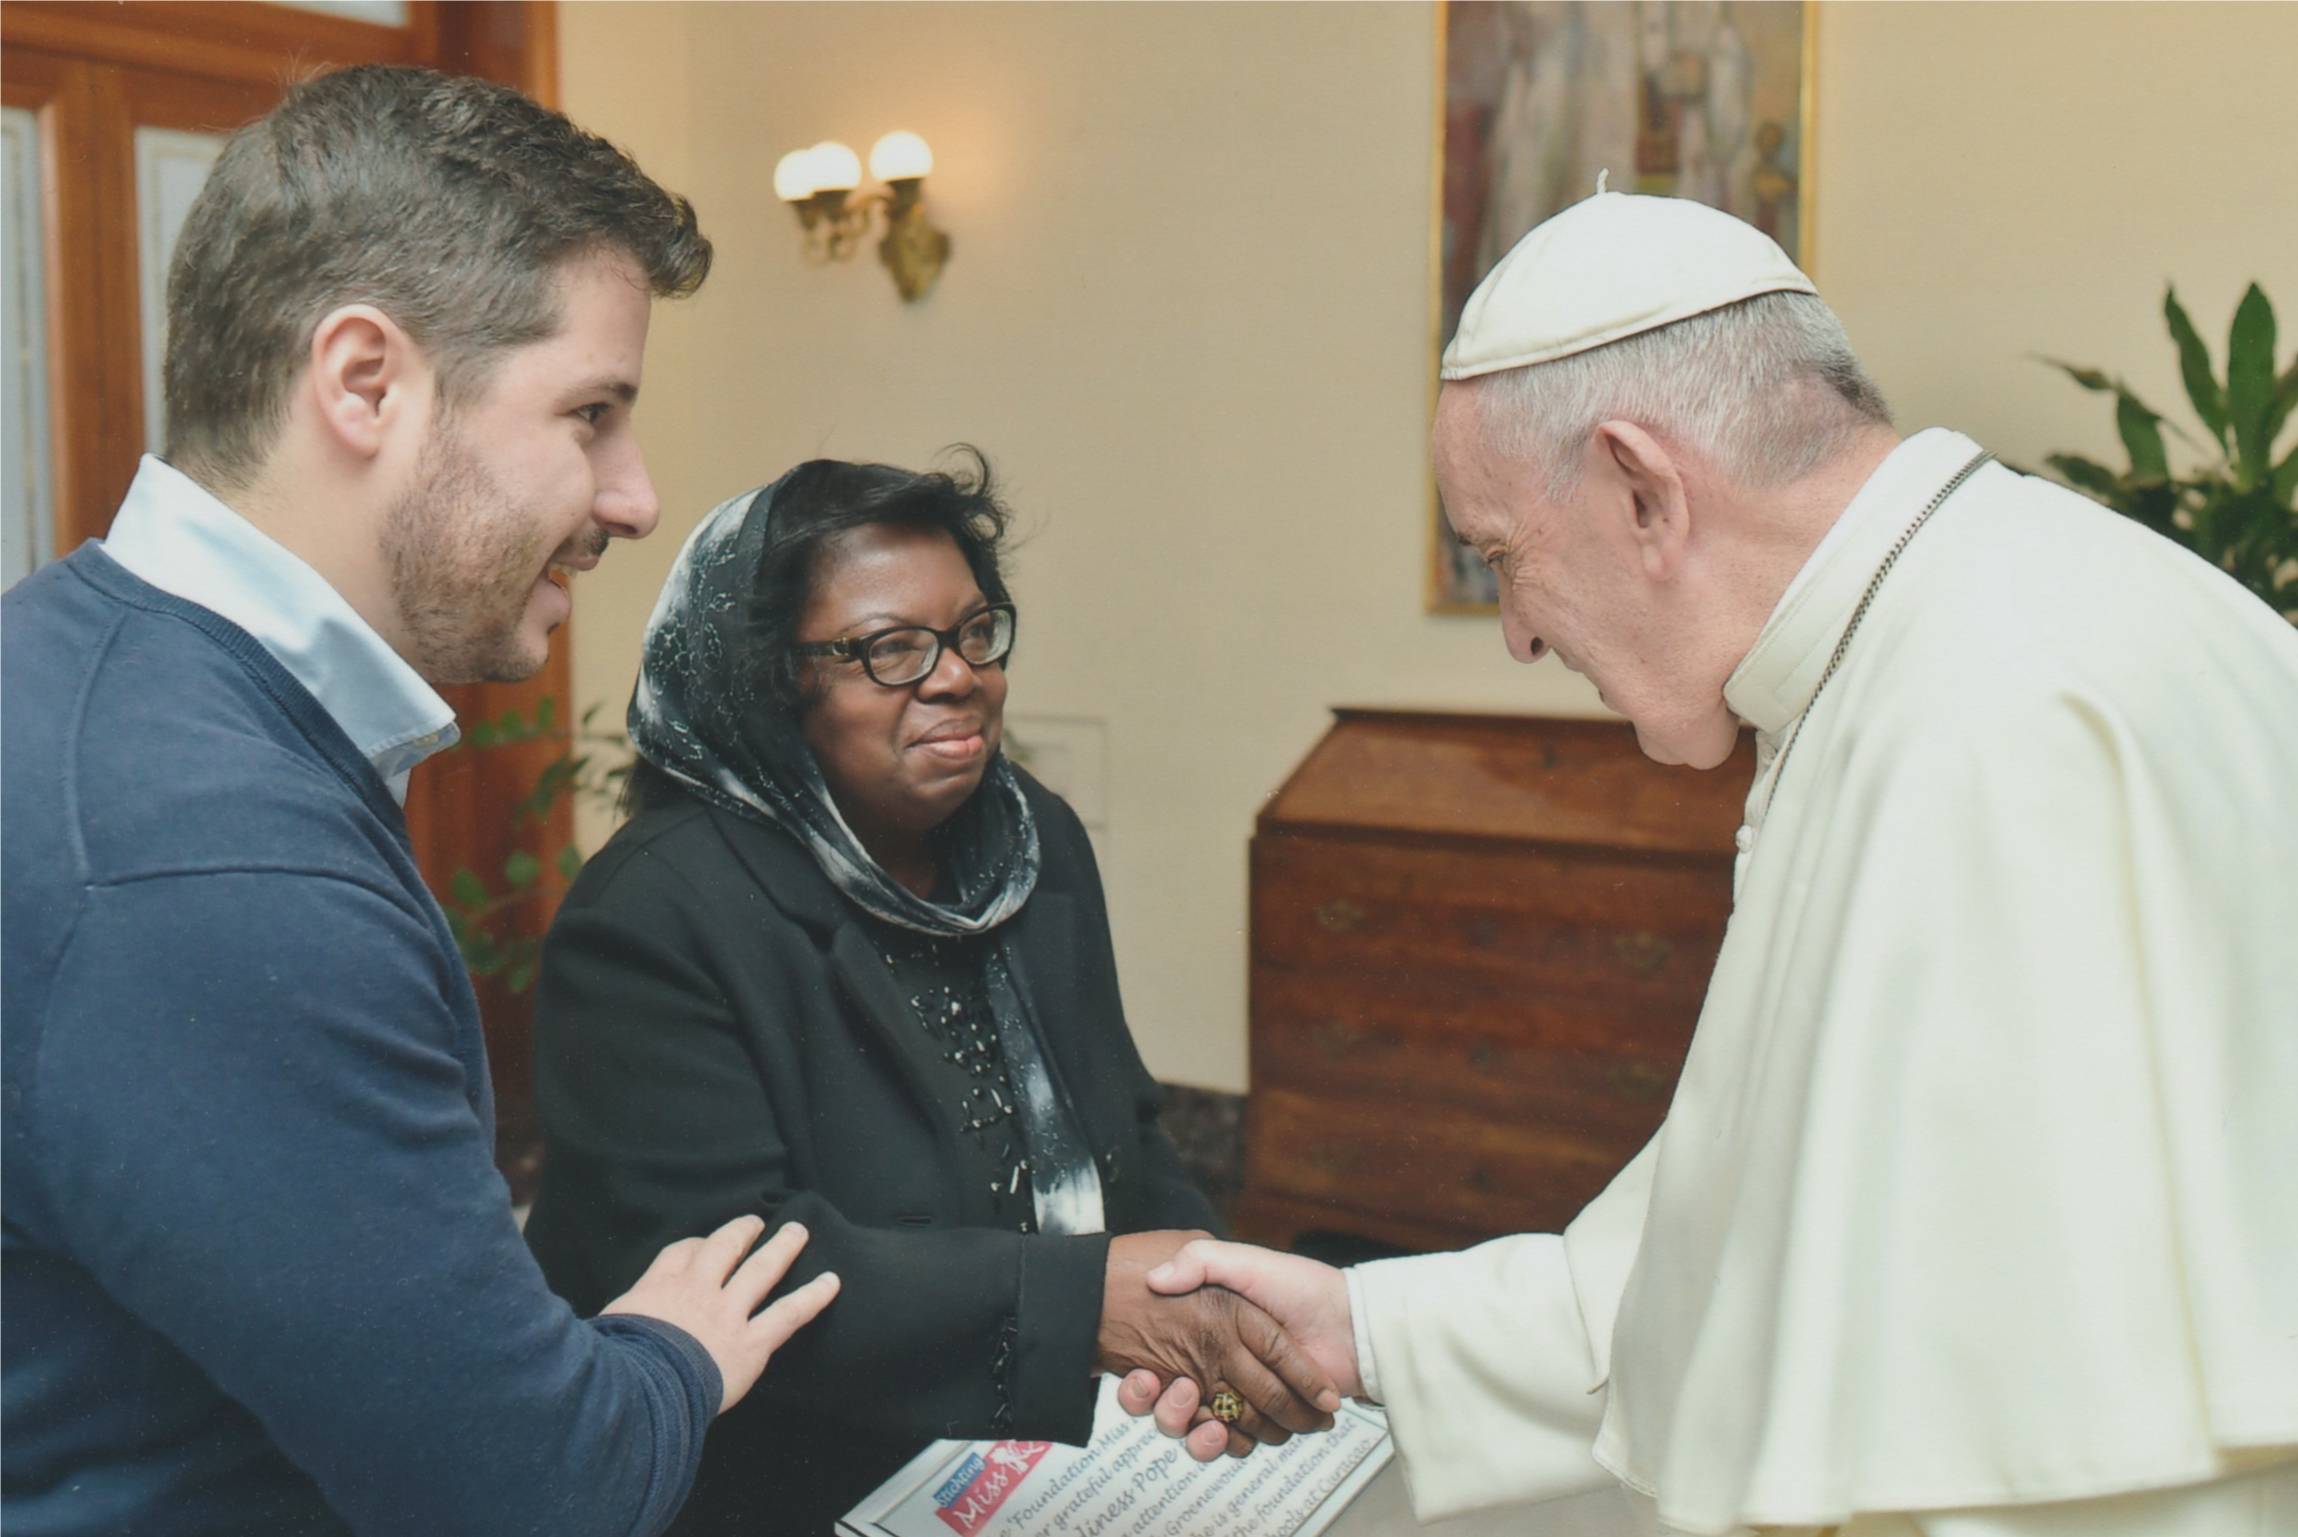 NTR | Op audiëntie bij de paus: ‘hij moet weten hoe schrijnend het leven is voor veel kinderen op Curaçao’